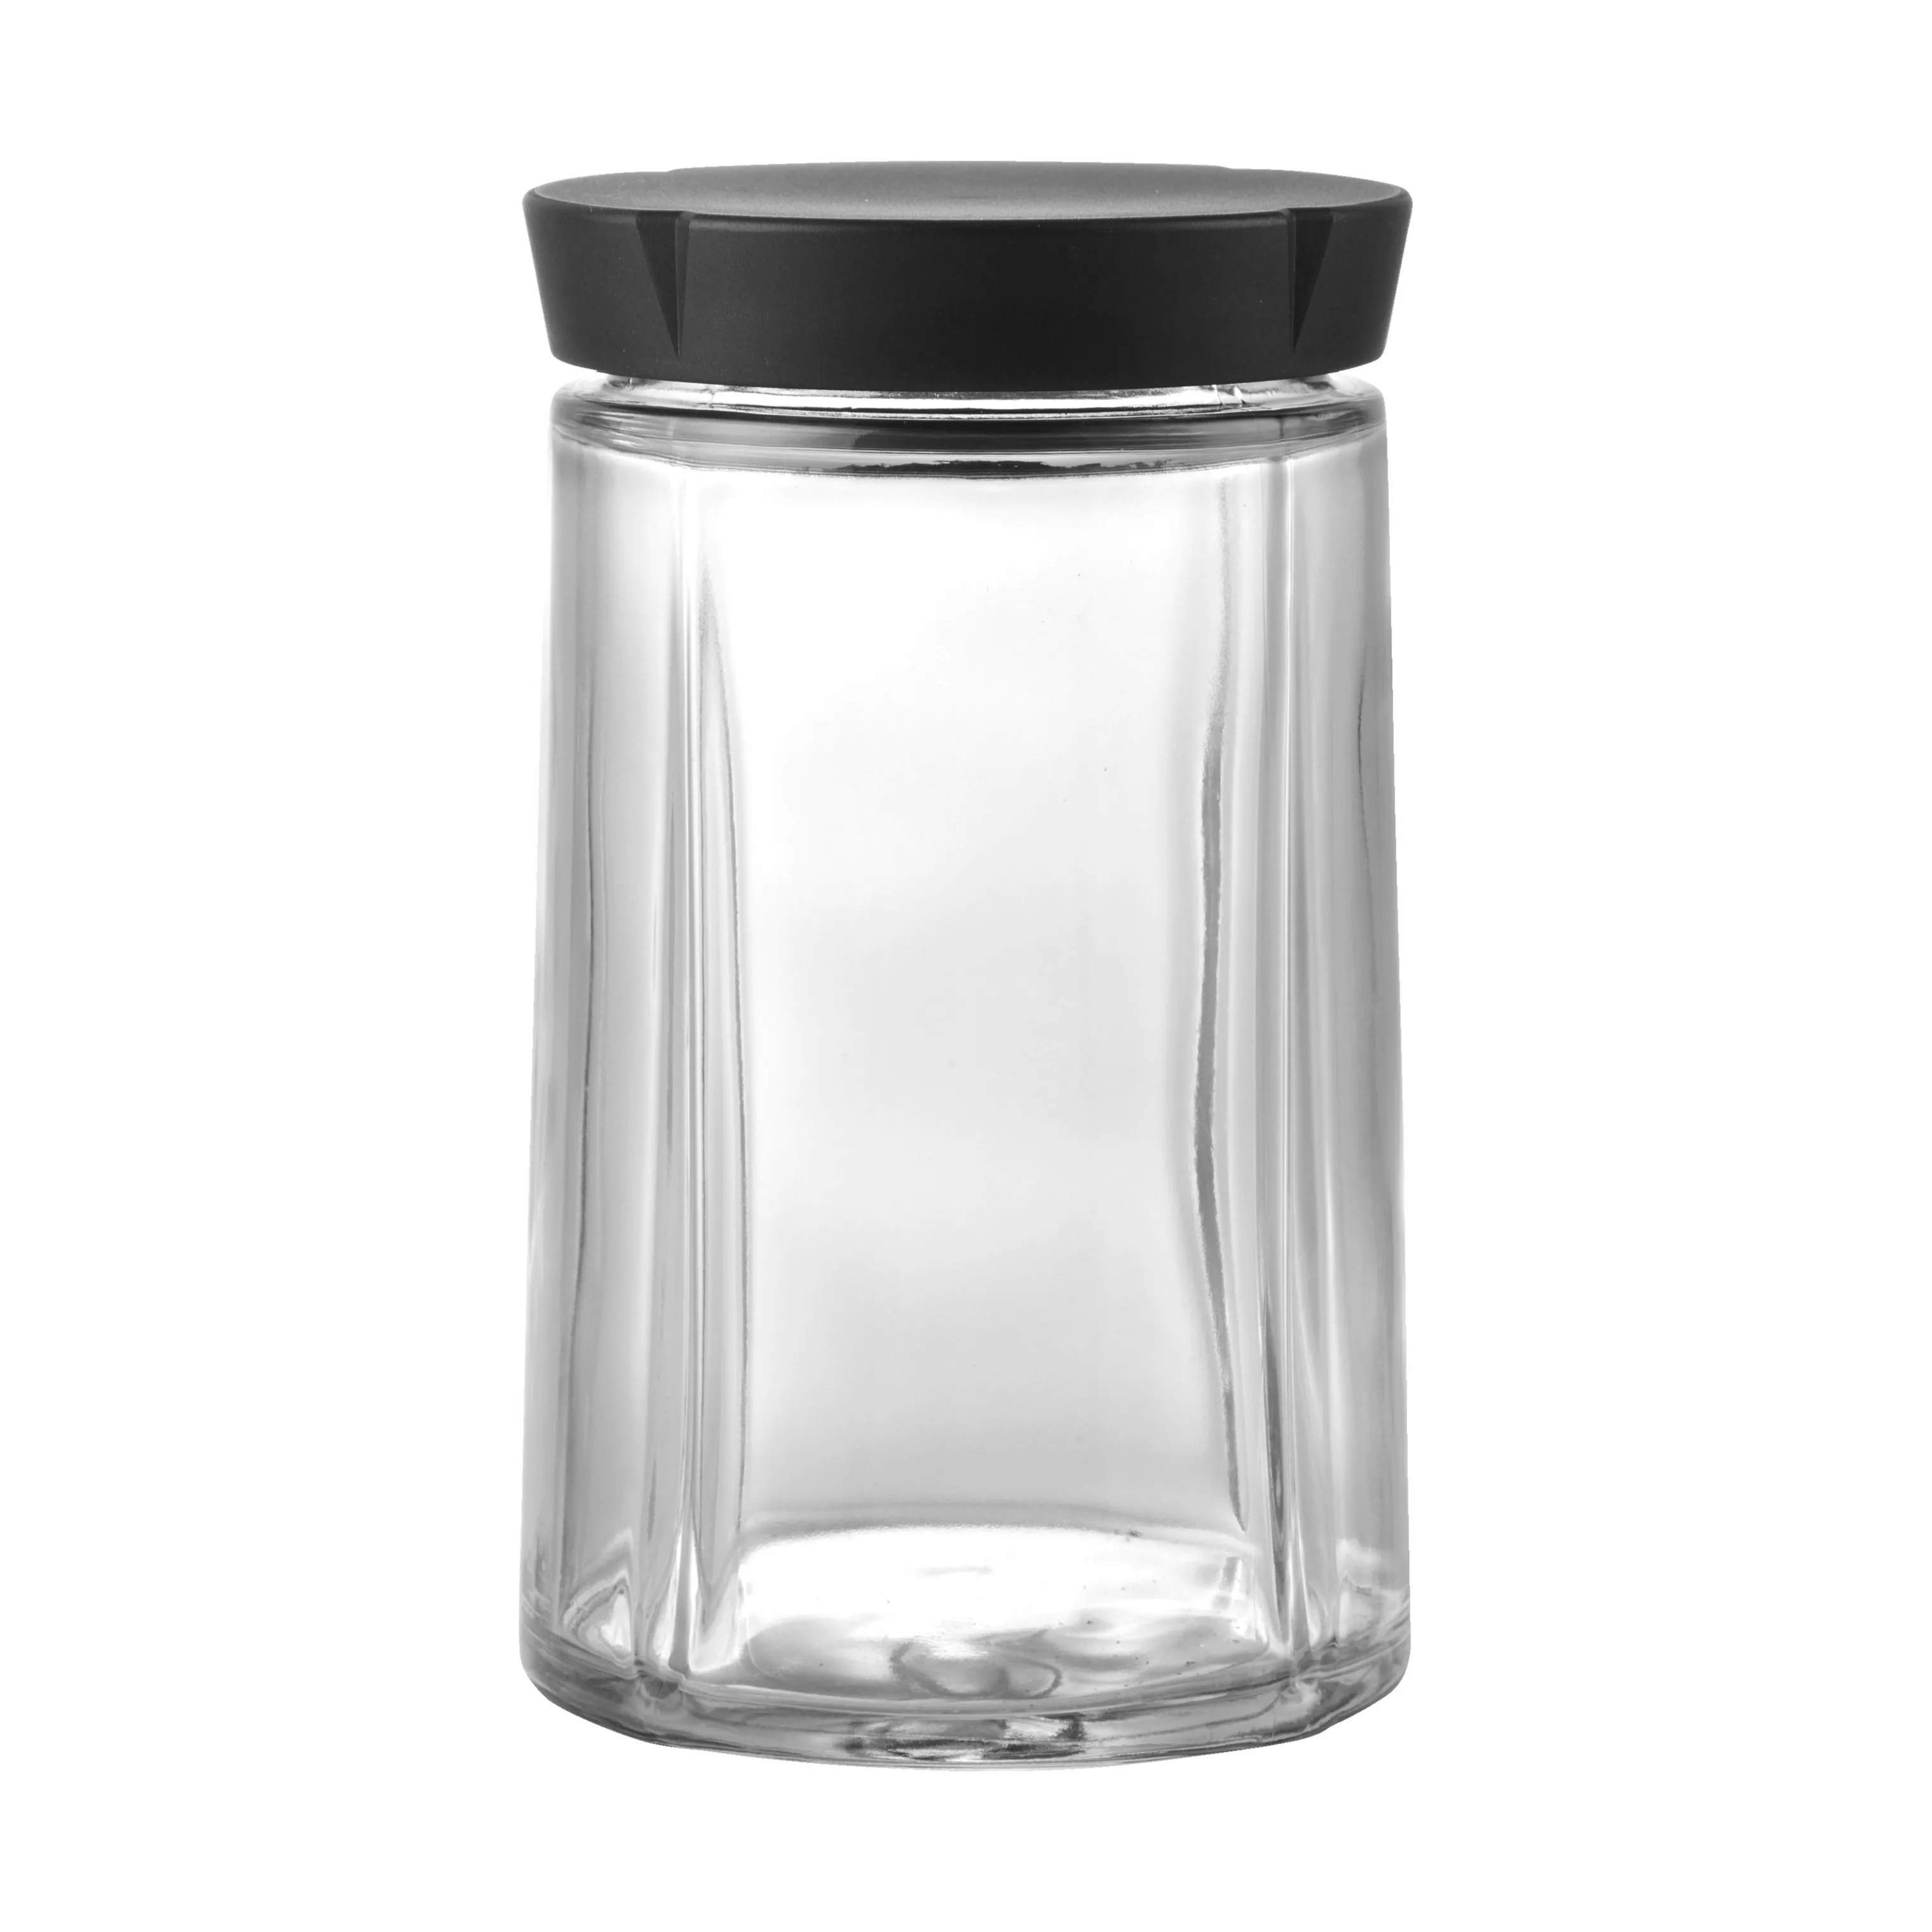 Grand Cru Opbevaringsglas, klar/sort, large